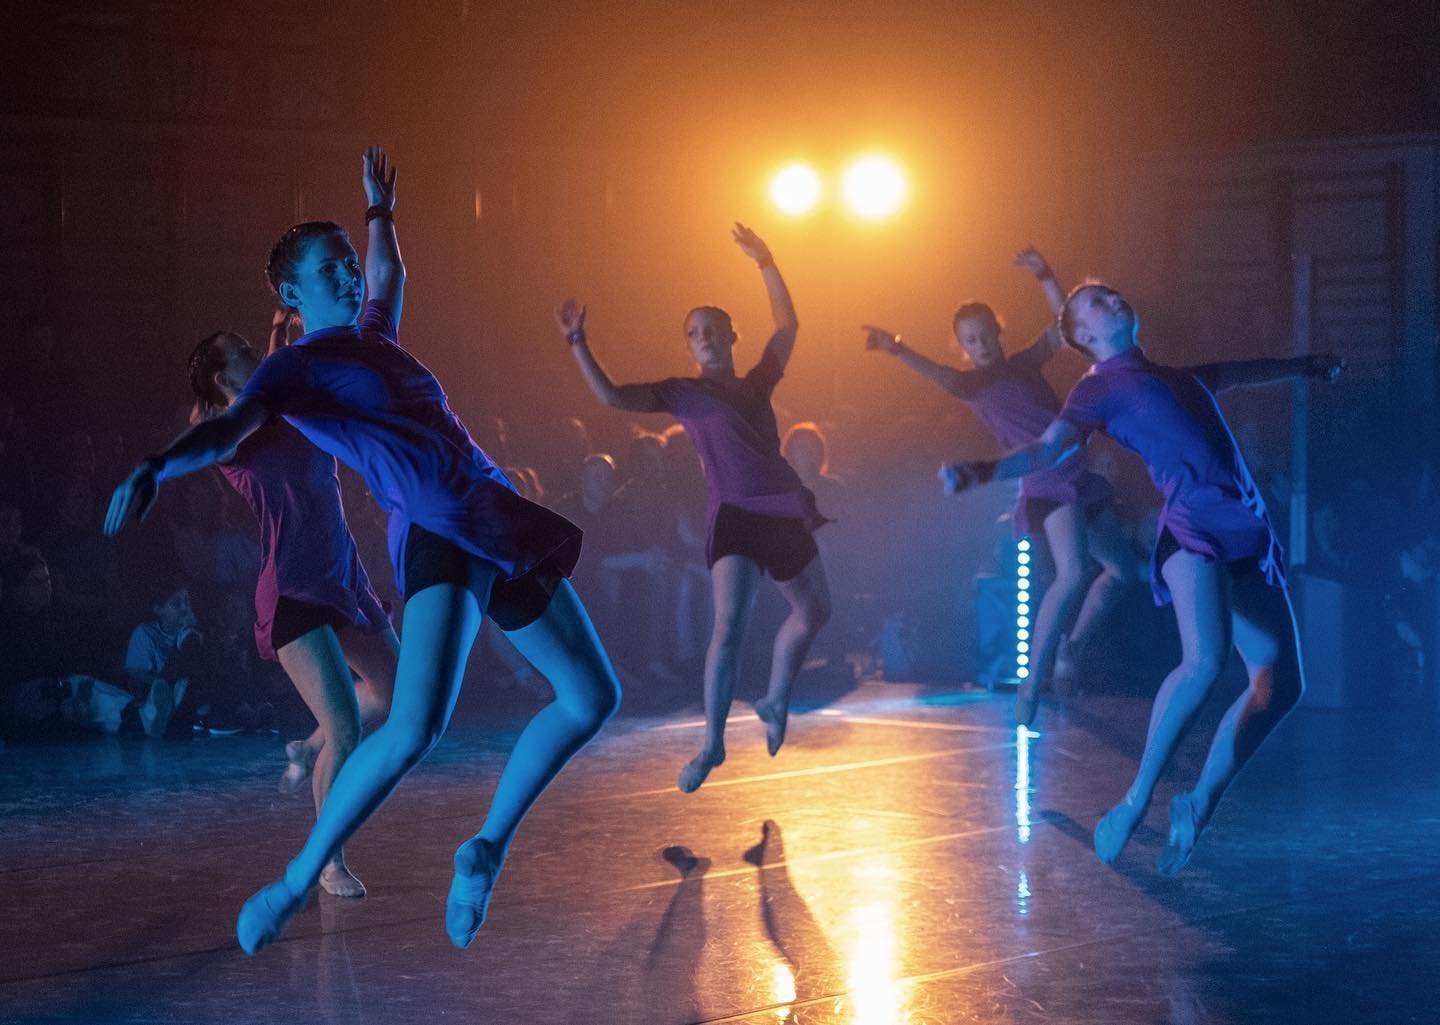 Dans voor het goede doel door de @leuvenseballetakademie #leuven #salcohaasrode #leuvenseballetacademie #dans #balletphotography #dance #dancephotography #ballerinapassion #dansfotografie #dansfotograaf #fujixt4